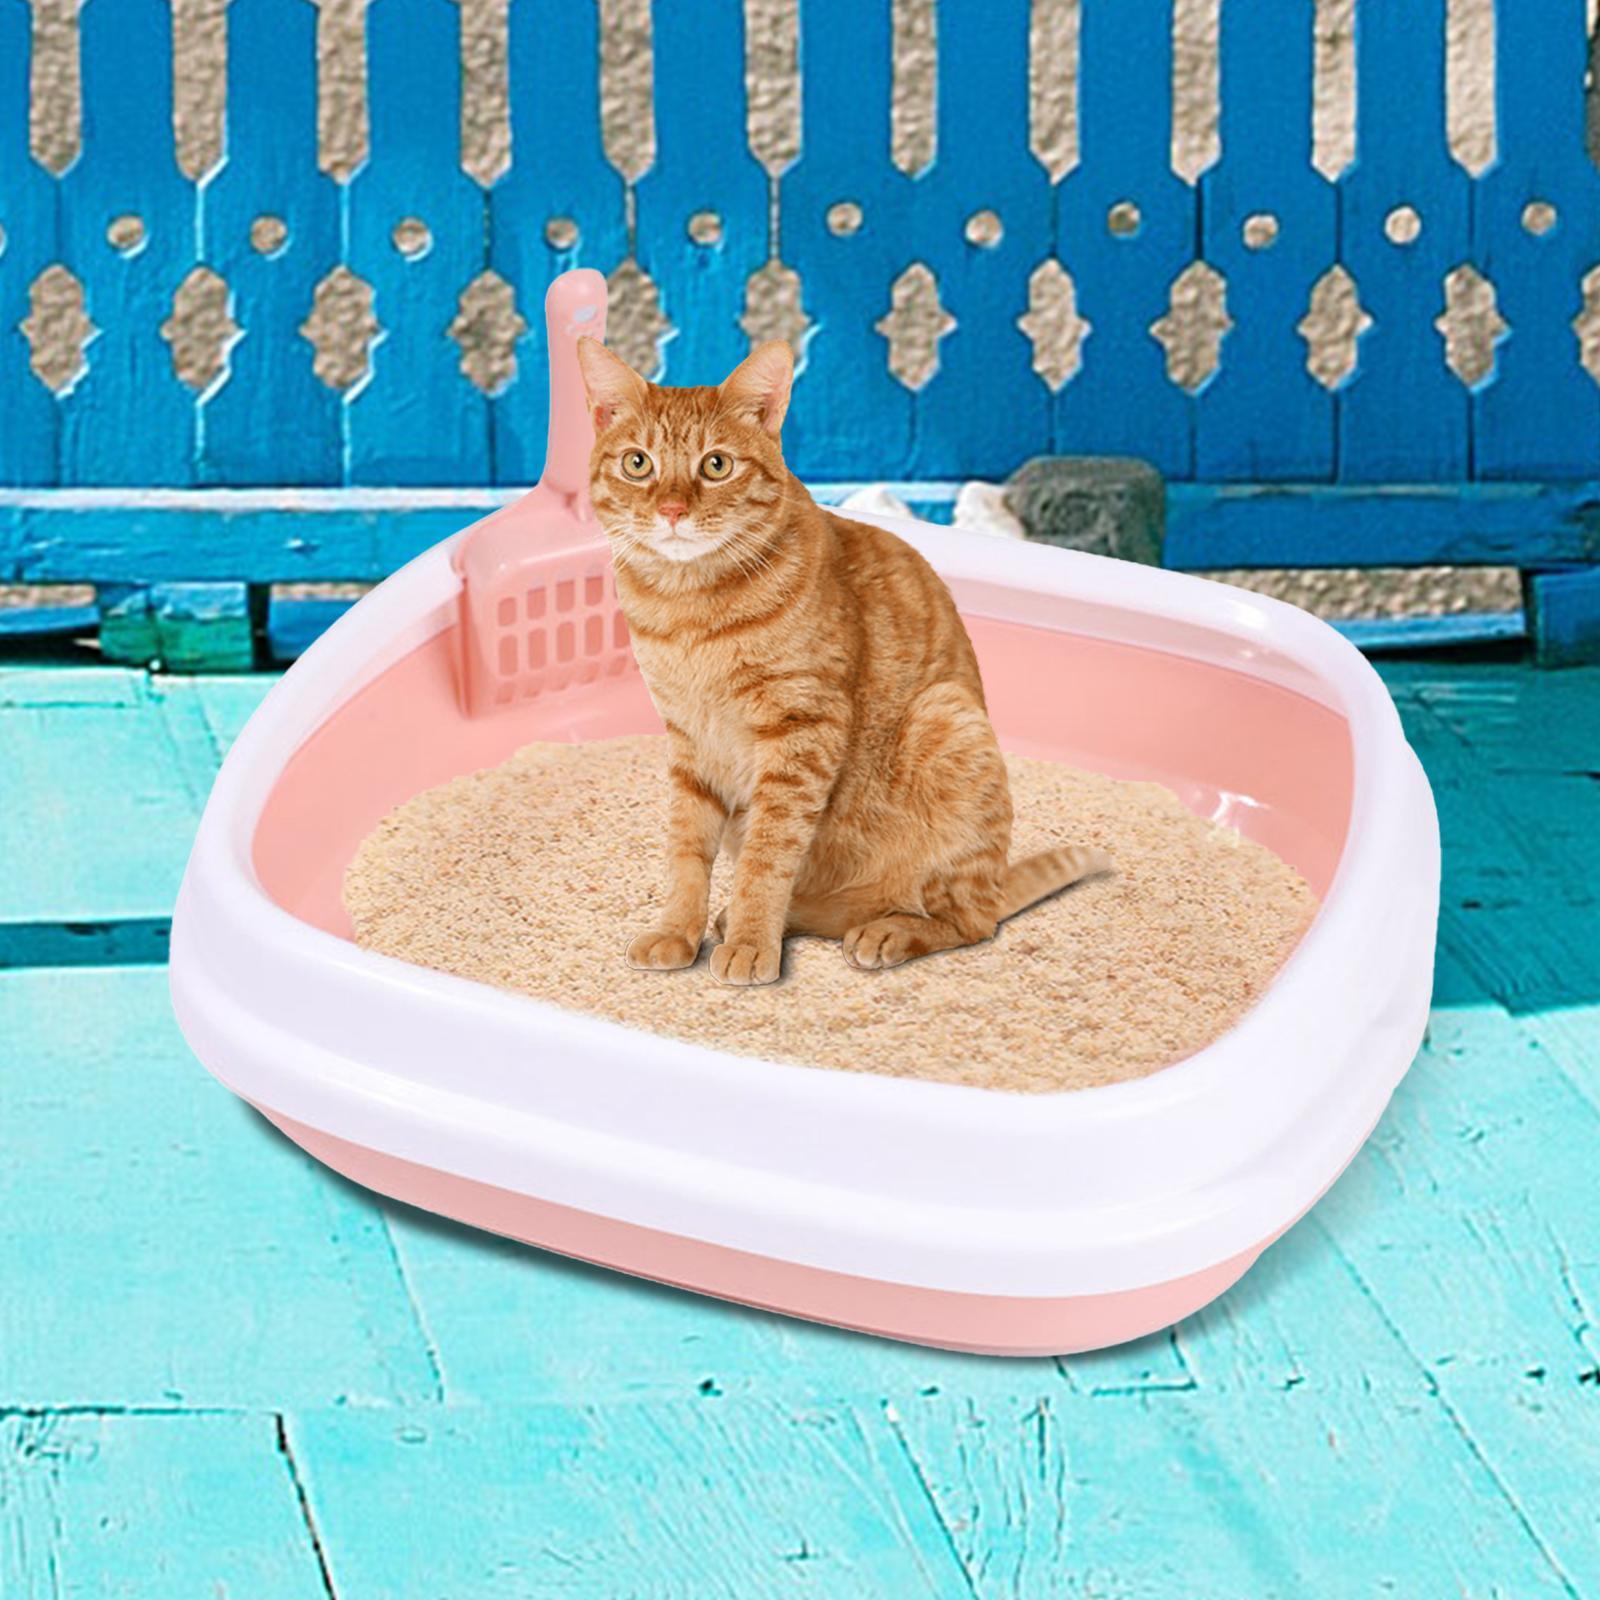 Cat Litter Box Kitten Toilet Pet Litter Tray Bedpan Cat Litter Container